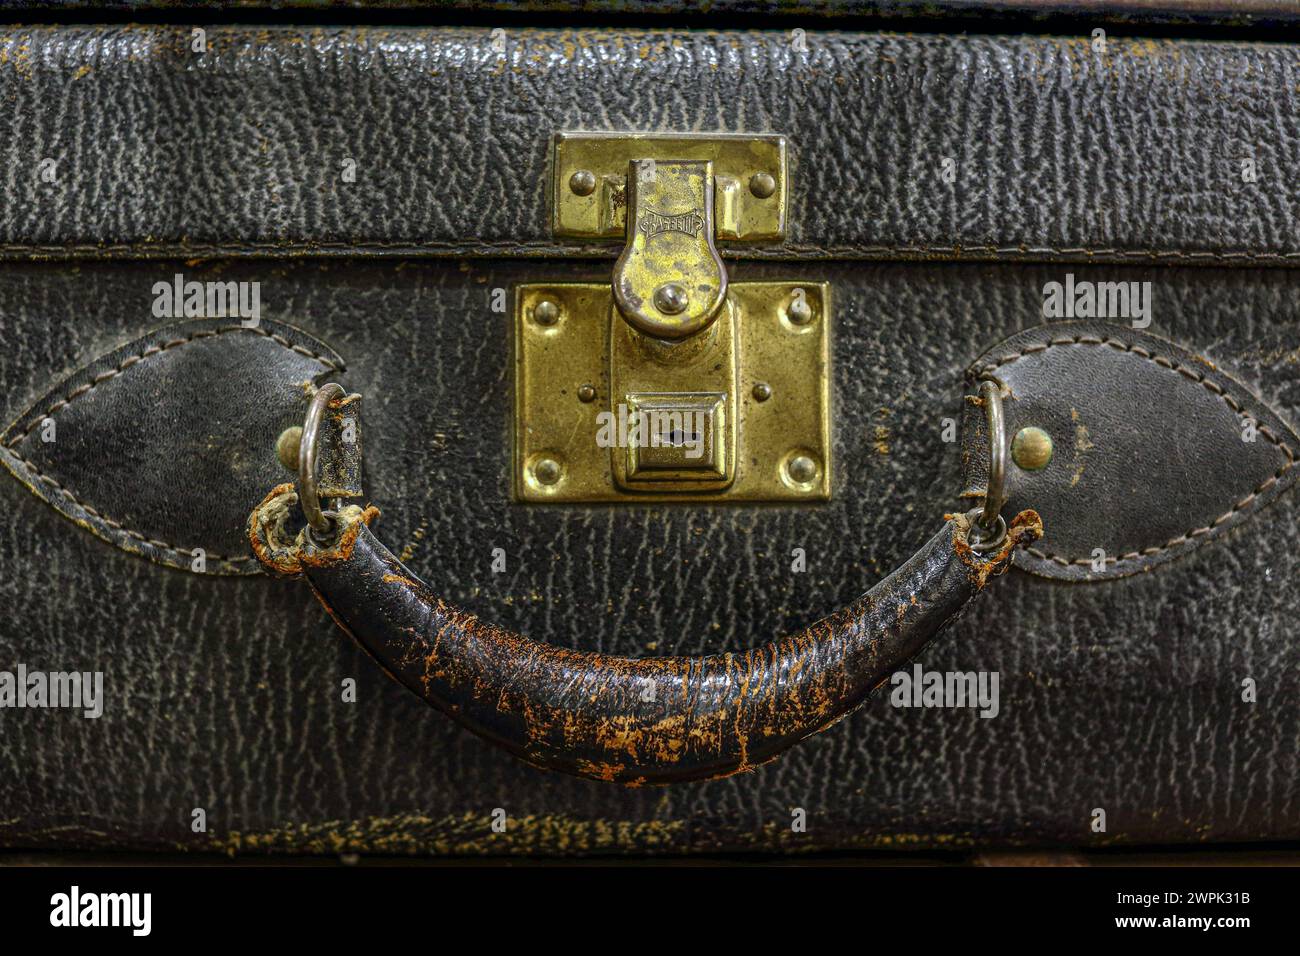 Près d'une valise avec poignée en cuir vintage Banque D'Images